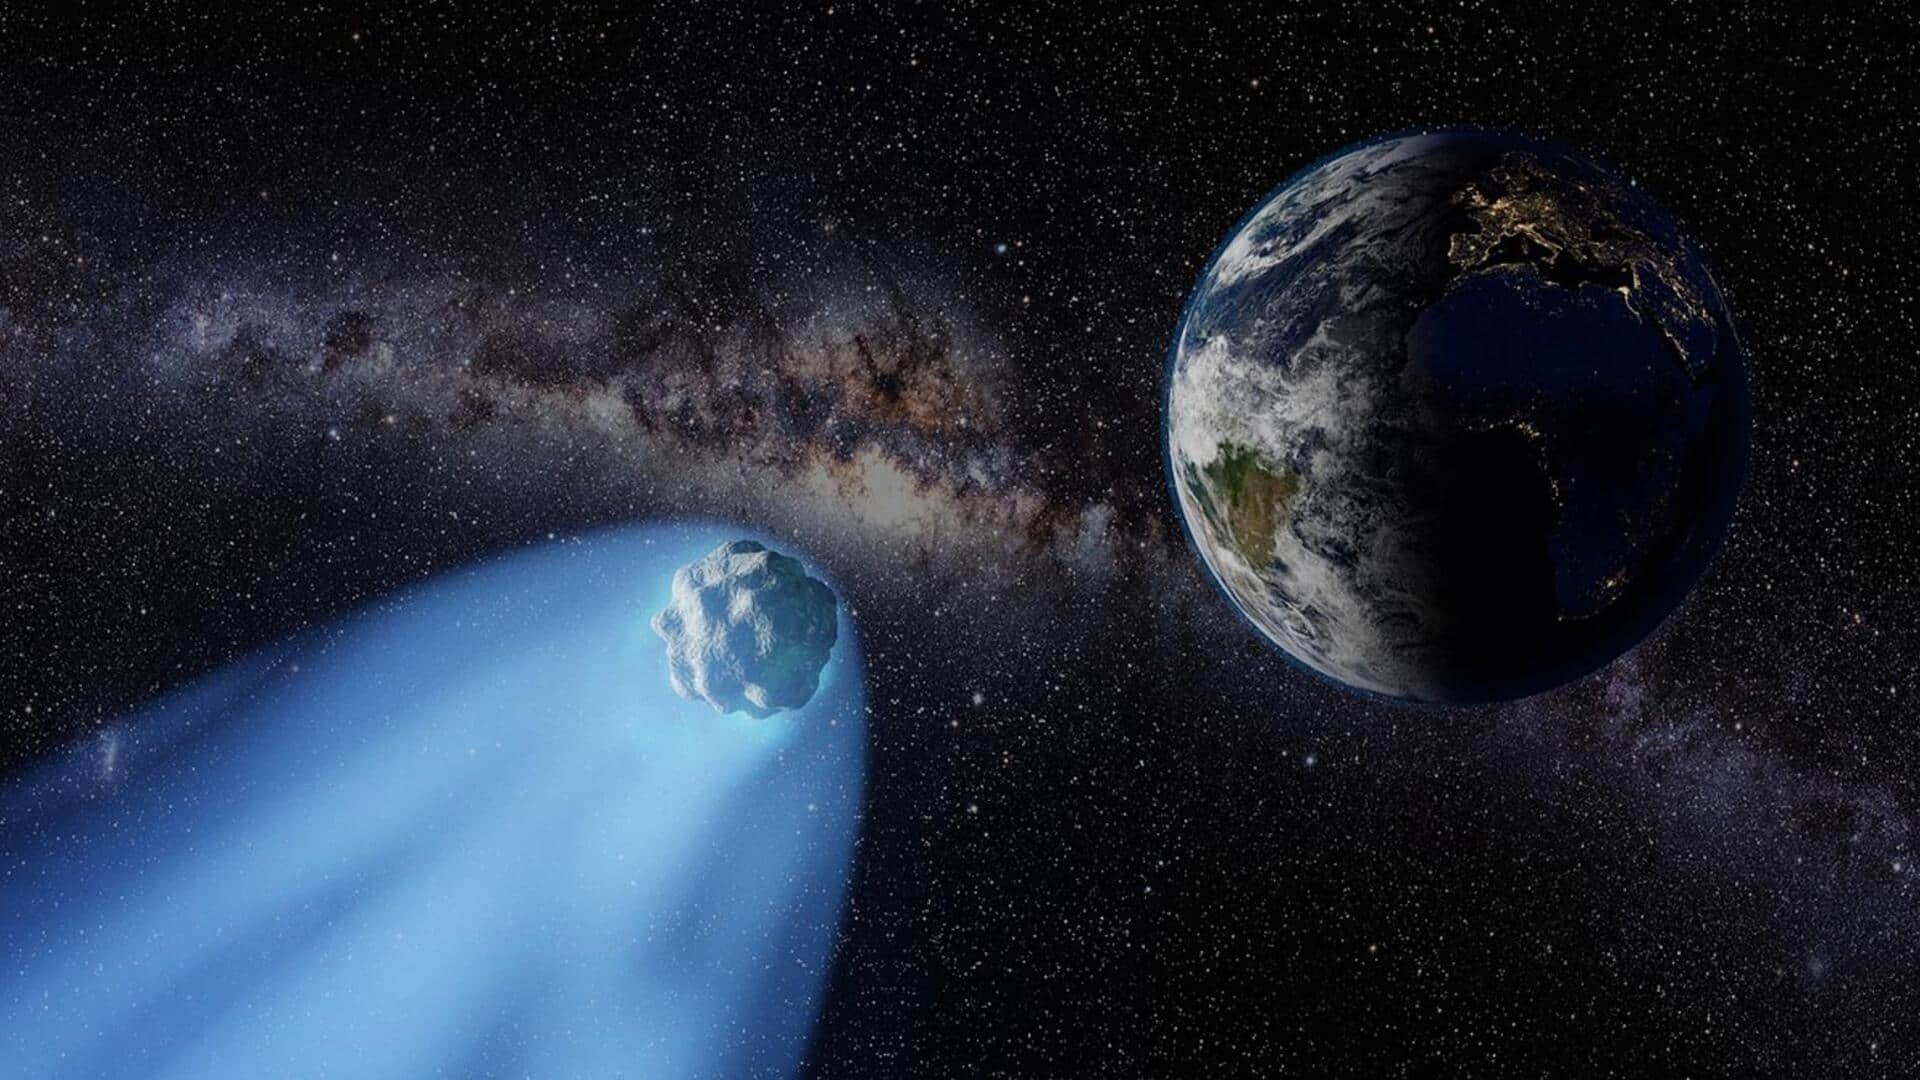 पृथ्वी की तरफ आ रहा एस्ट्रोयड 2019 VL5, नासा ने जारी किया अलर्ट 